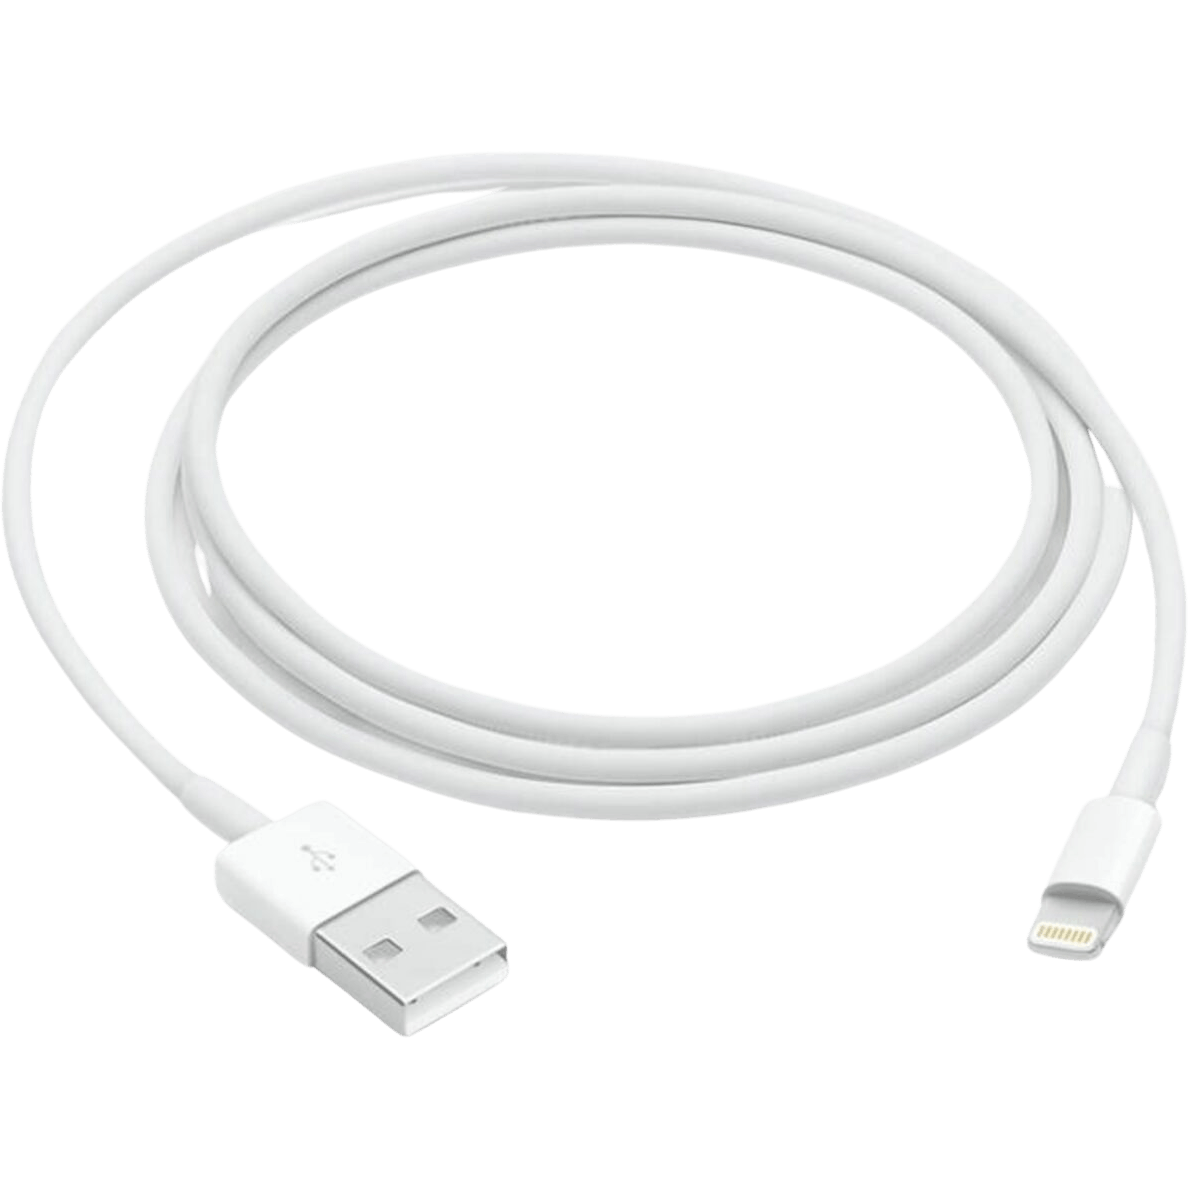 Verplicht Teleurgesteld kleurstof Apple Lightning naar USB-A kabel - Mobiel.nl